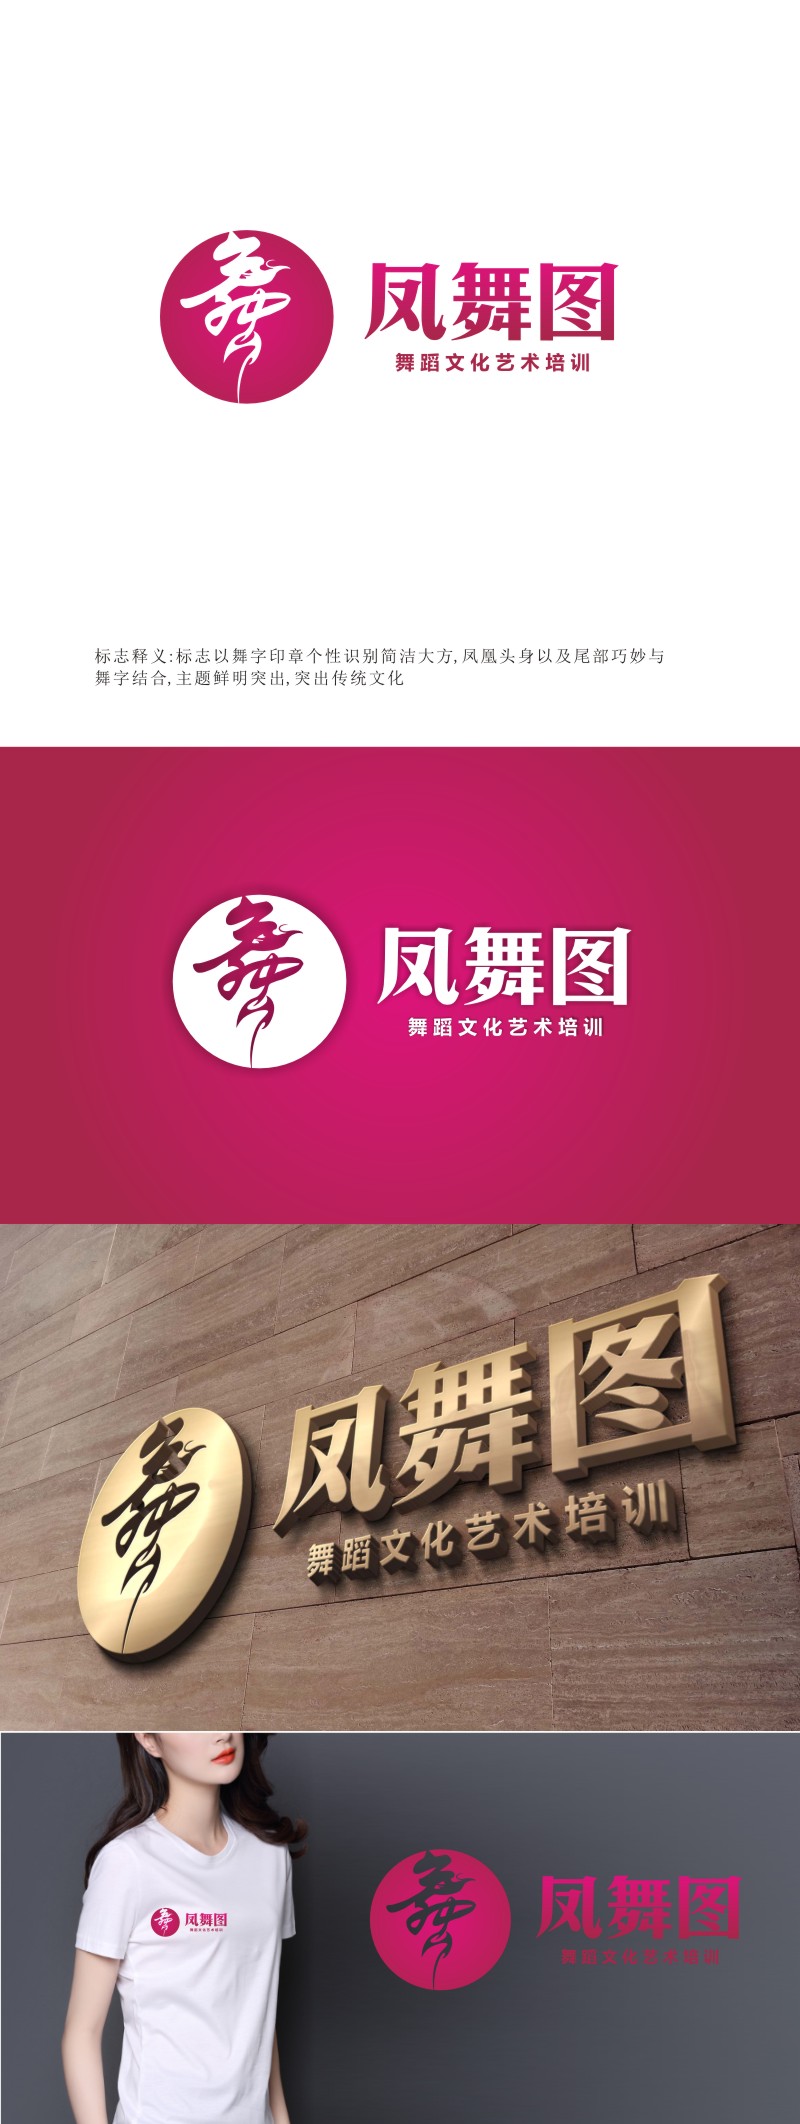 姜彦海的深圳市凤舞图舞蹈文化艺术培训有限公司logo设计